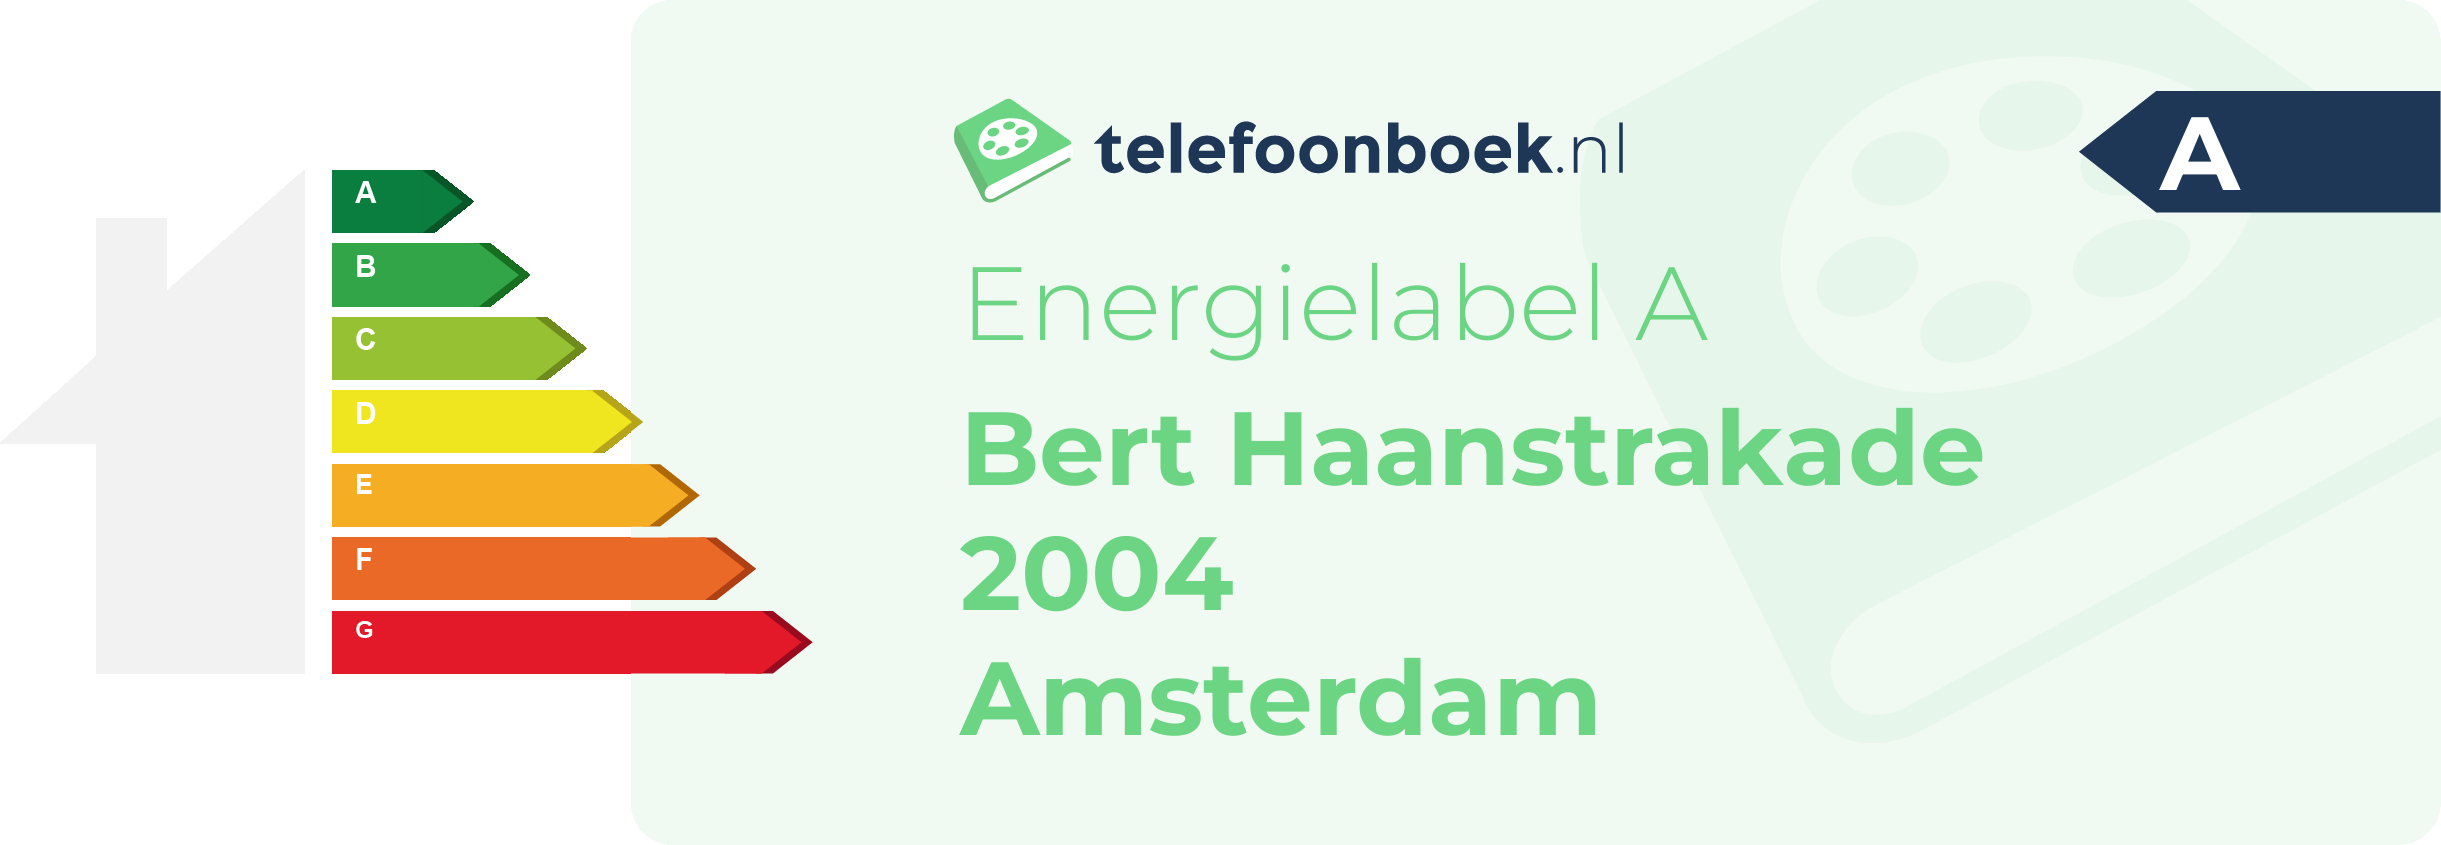 Energielabel Bert Haanstrakade 2004 Amsterdam